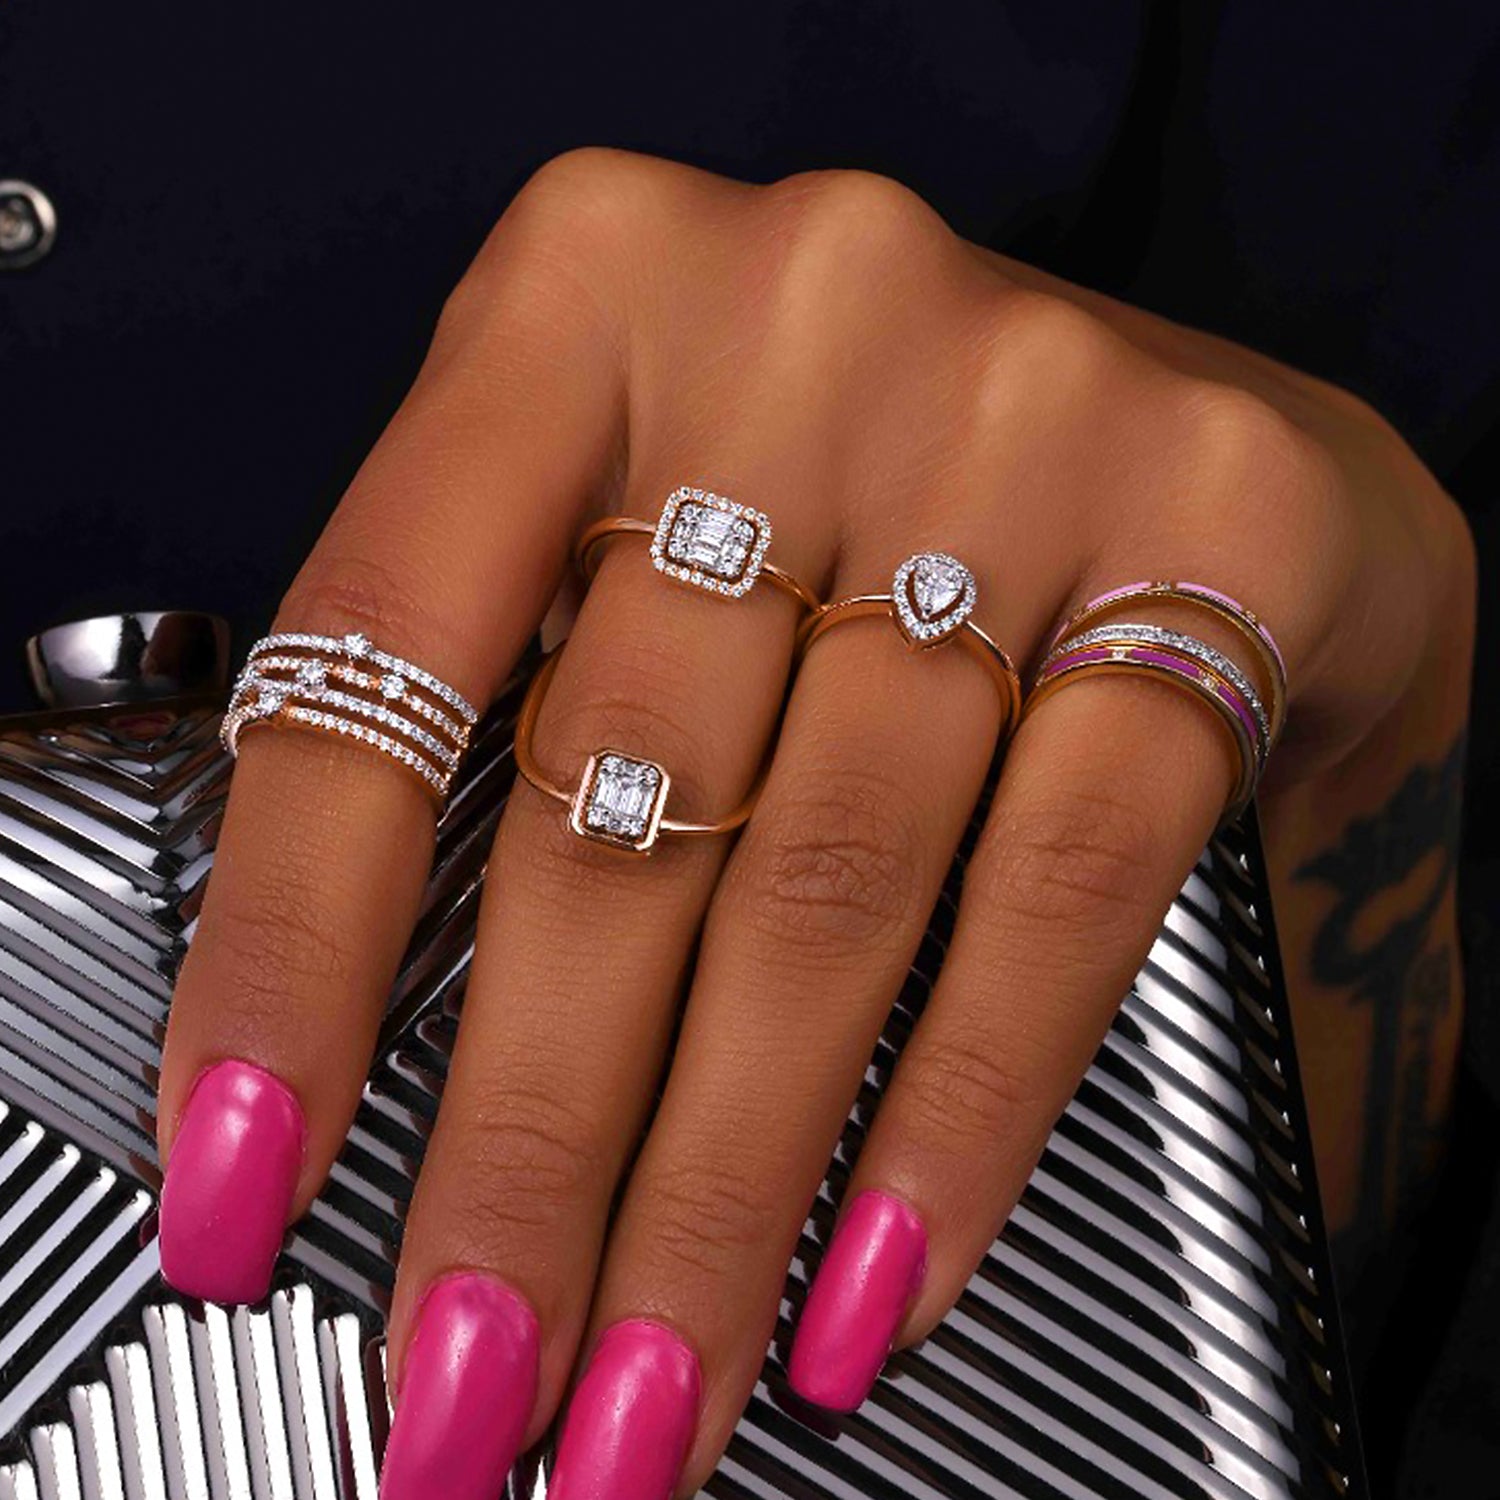 sonir Round lightweight diamond ring, Weight: 3-4 Gms at Rs 35000 in New  Delhi